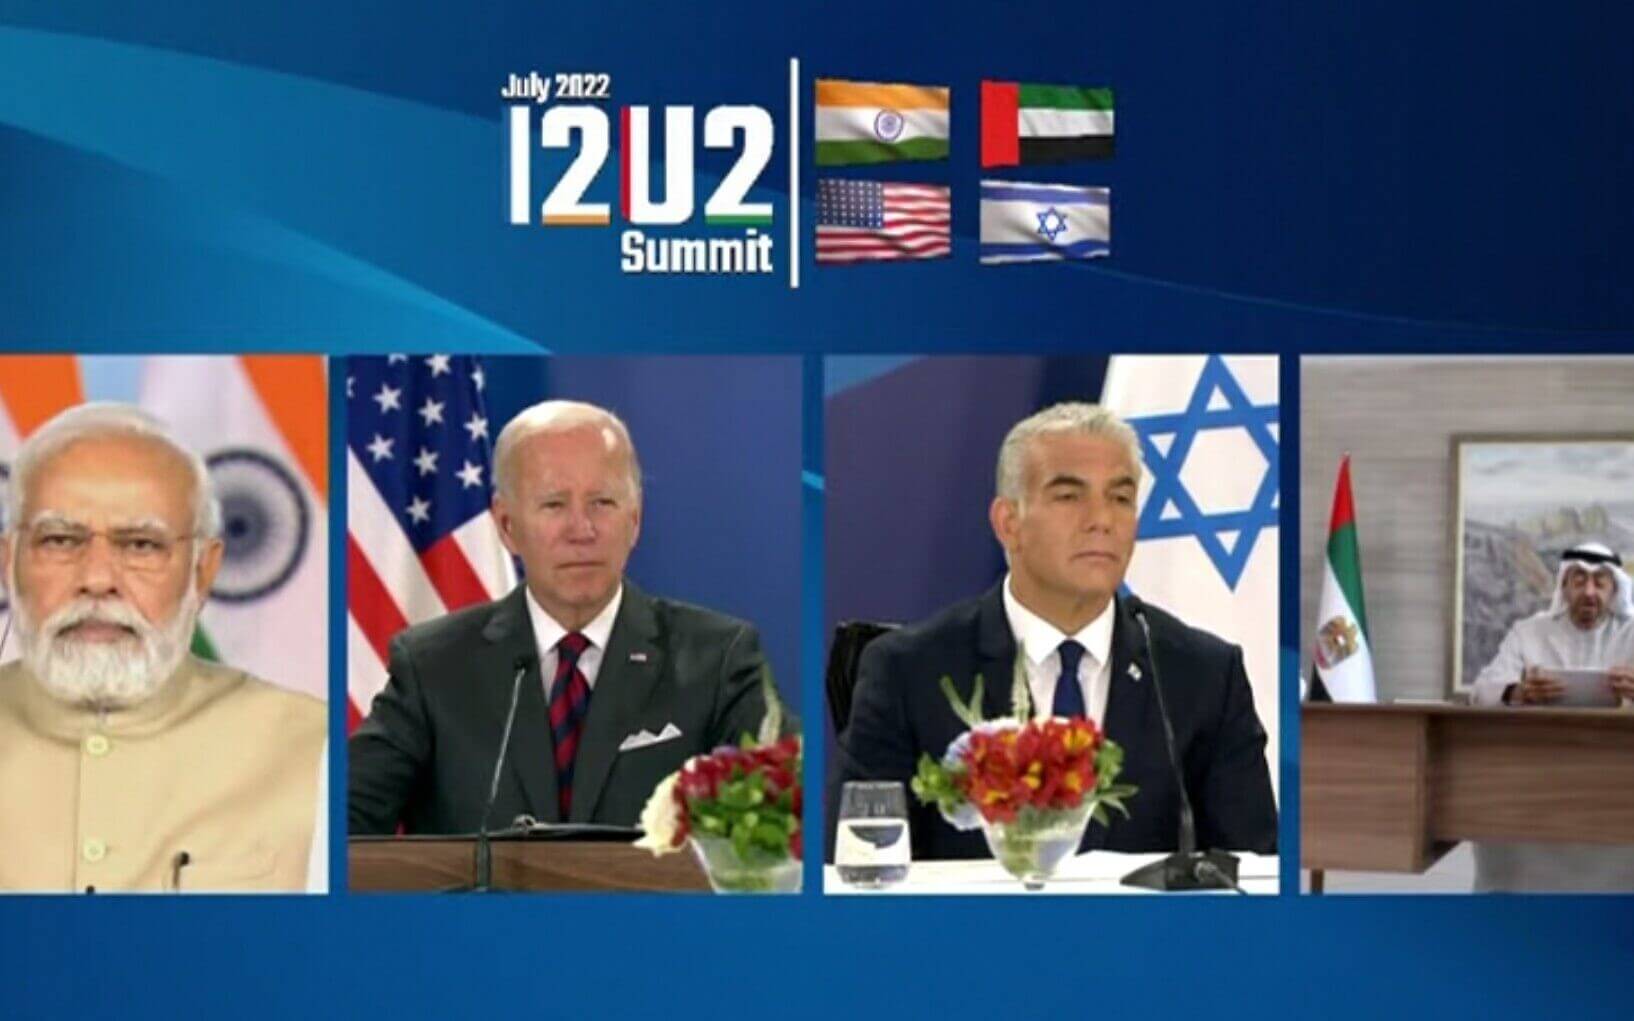 SUMMARY: I2U2 Leaders’ Summit